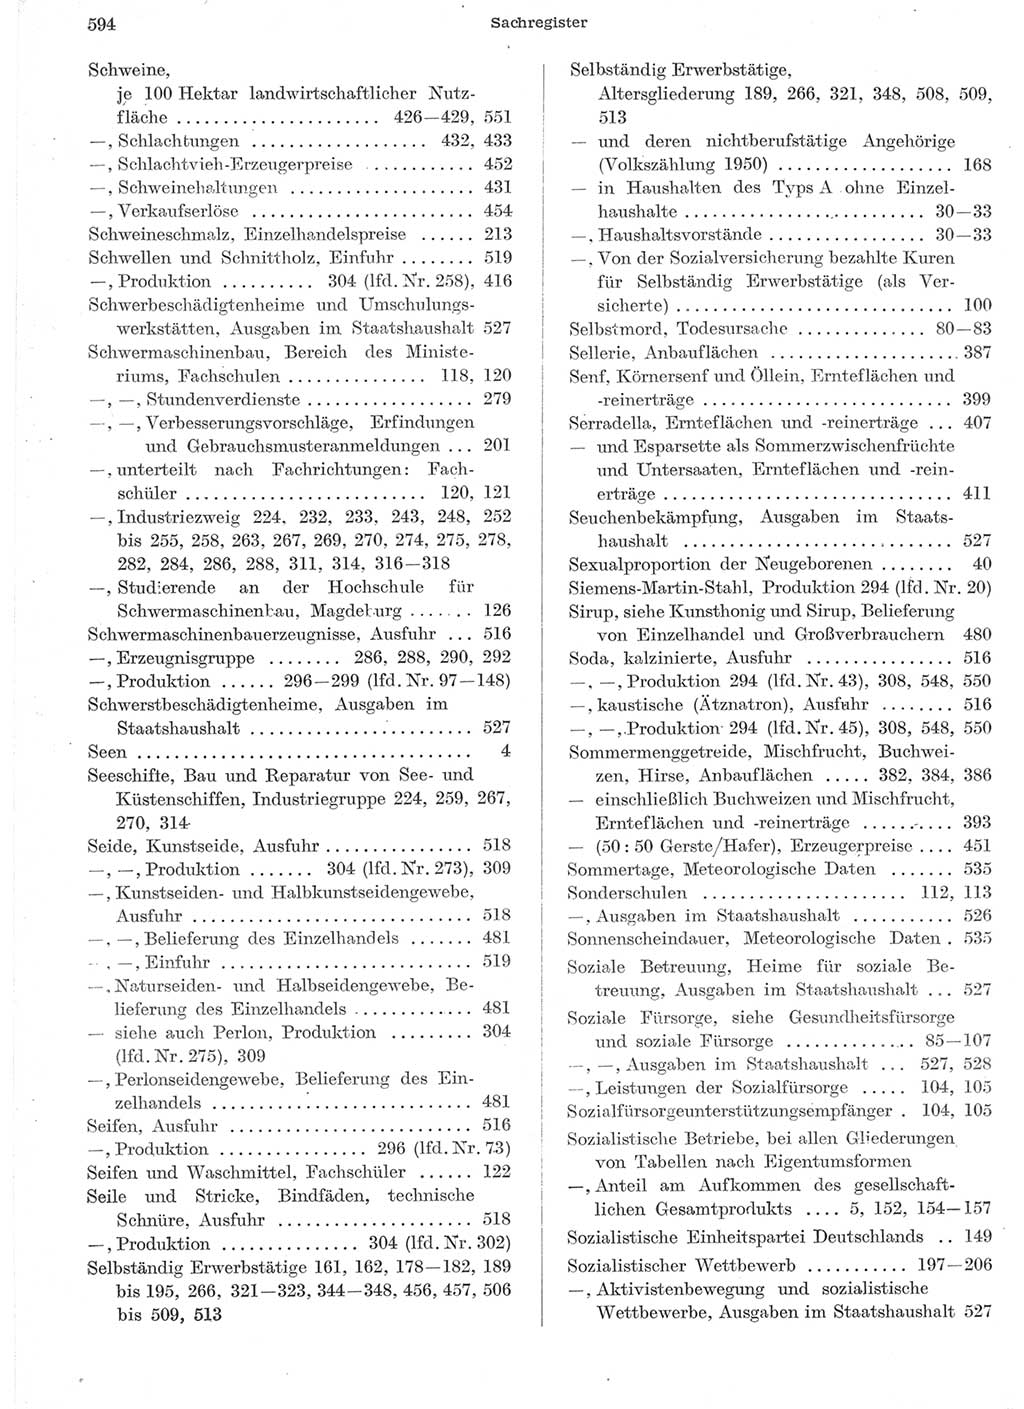 Statistisches Jahrbuch der Deutschen Demokratischen Republik (DDR) 1957, Seite 594 (Stat. Jb. DDR 1957, S. 594)